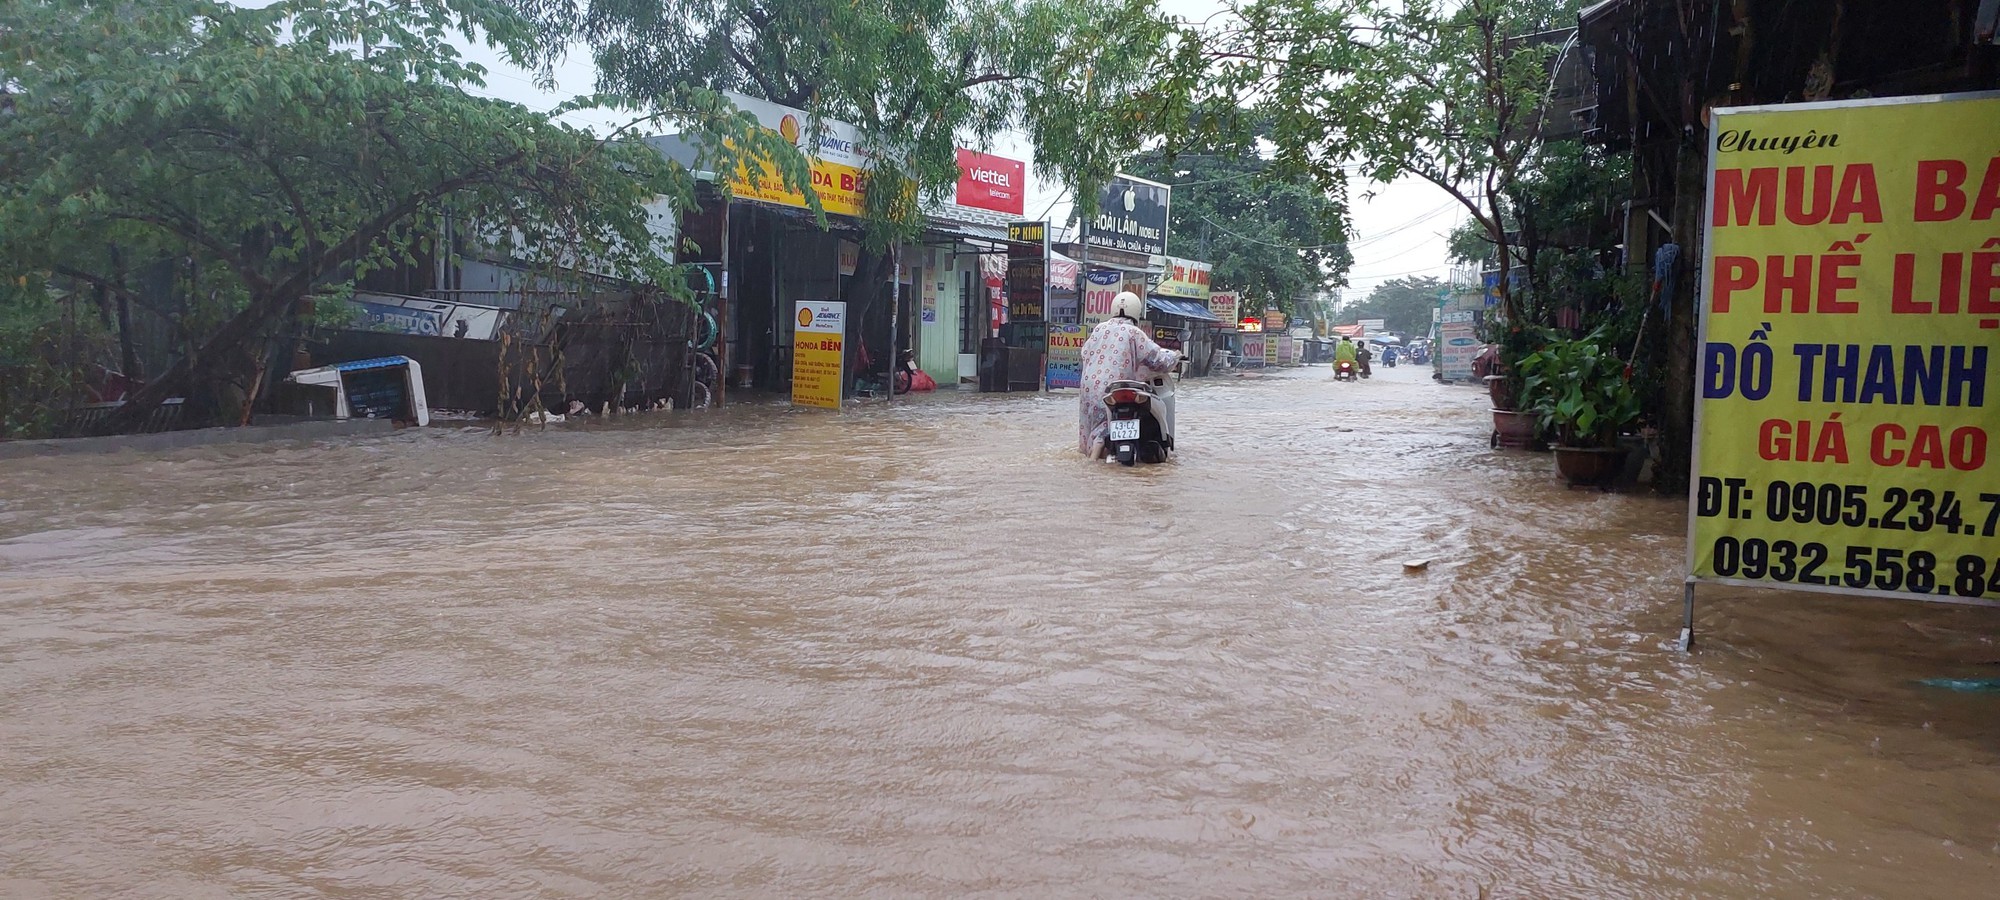 Đường phố Đà Nẵng lại ngập sau mưa lớn, ô tô, xe máy bì bõm lội nước - Ảnh 7.